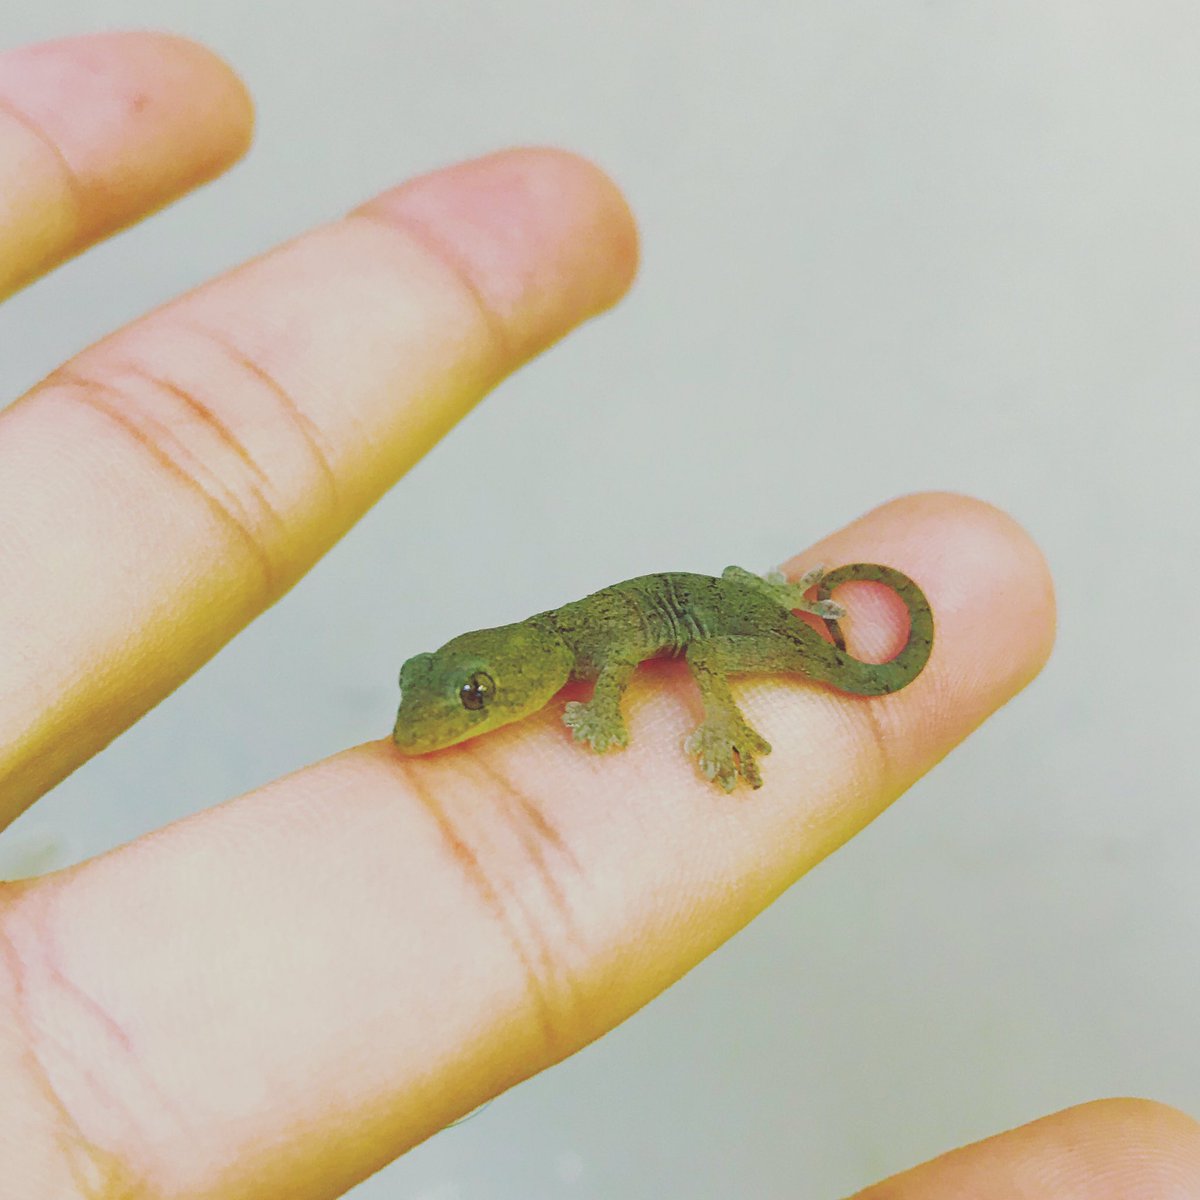 須藤どらま Pa Twitter かわいい ヤモリ 爬虫類 家を守る かわいい Gecko Reptile Kawaii Cute